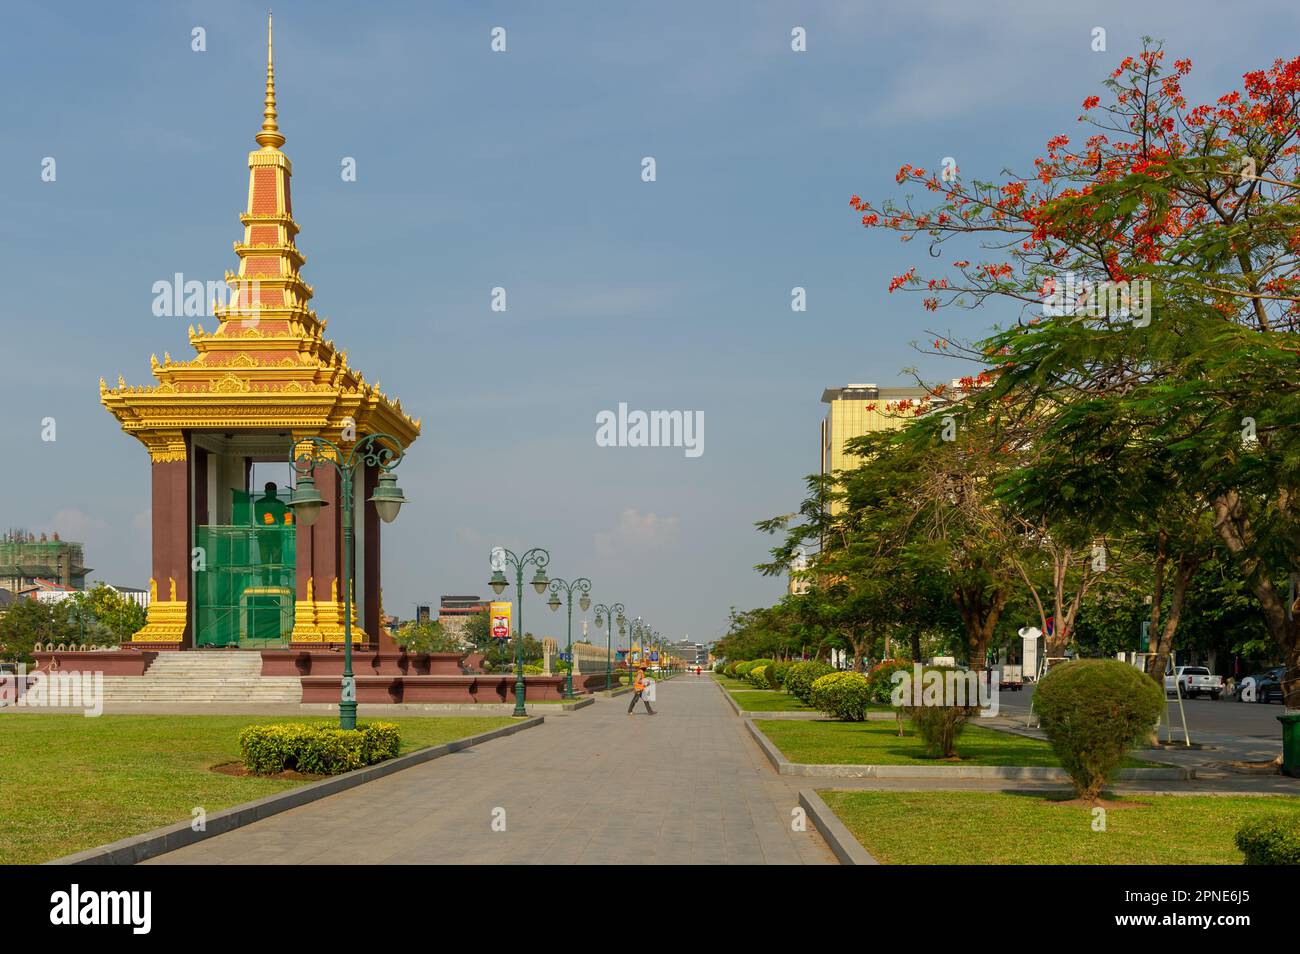 Statue of Sihanouk Norodom, Phnom Penh, Cambodia Stock Photo